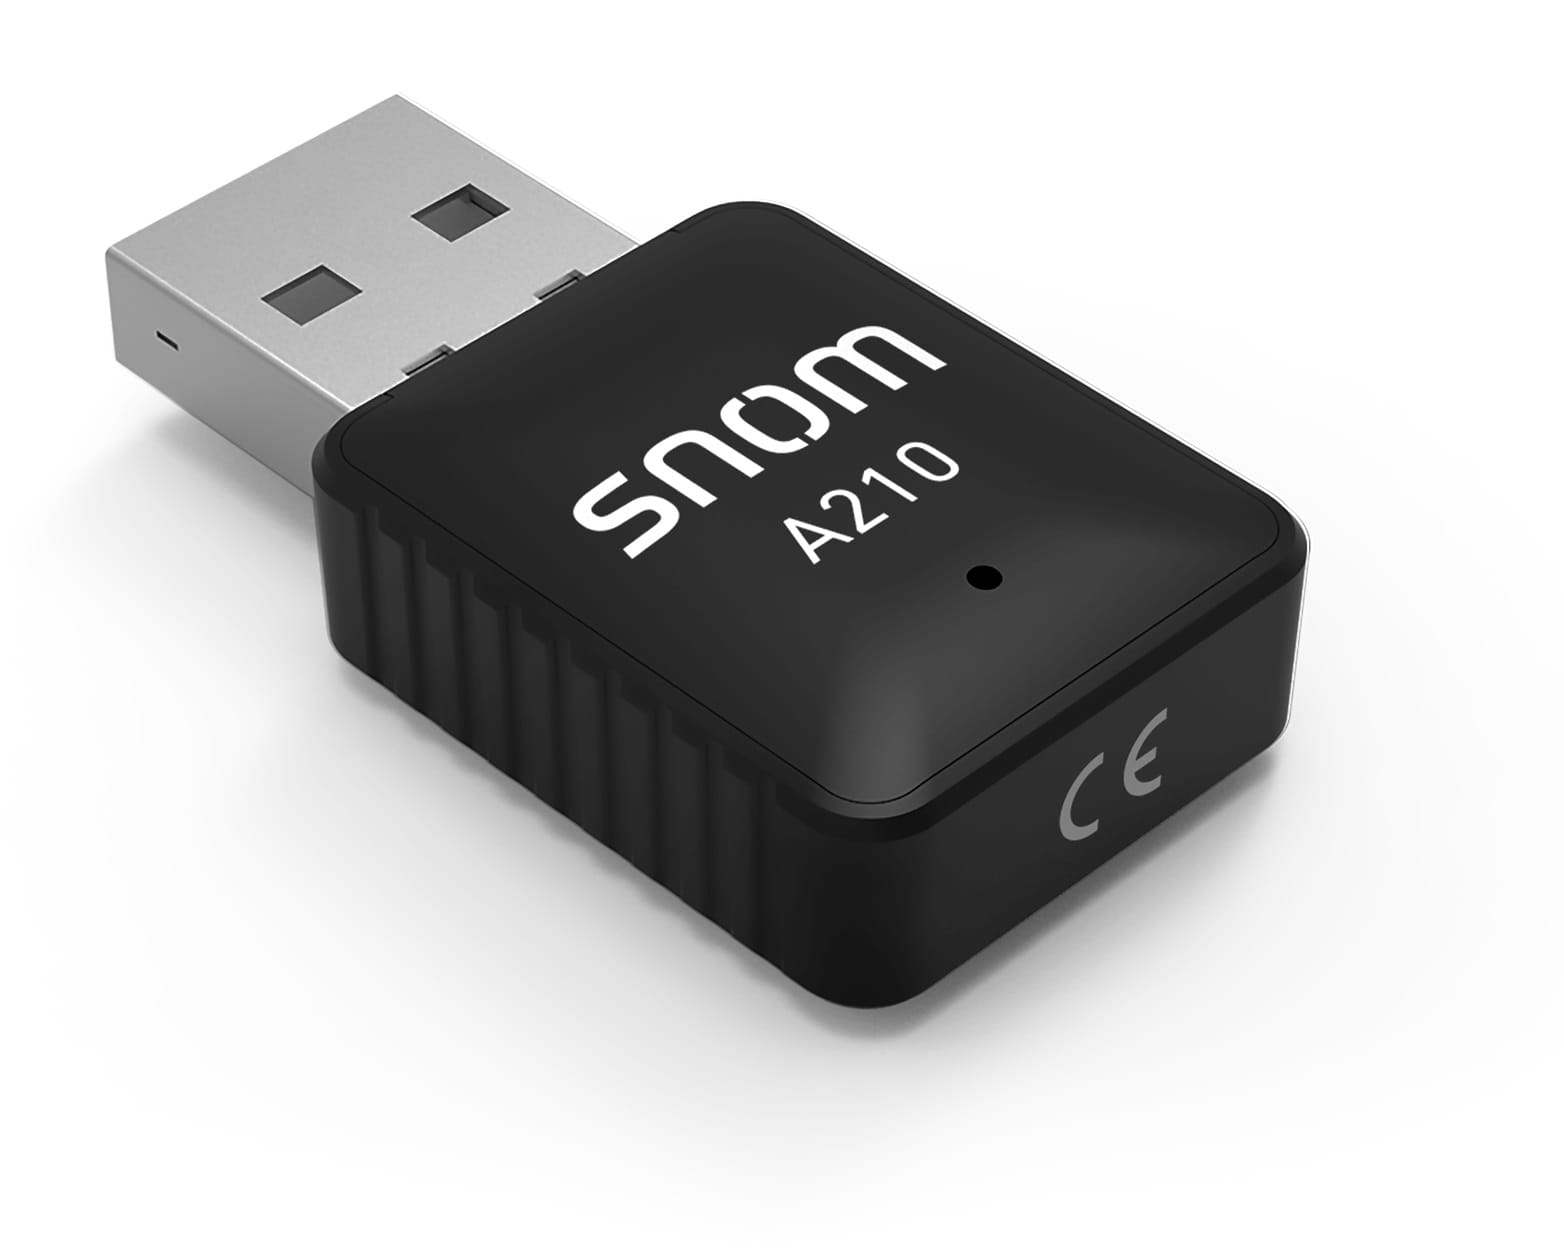 Snom A210 - Netzwerkadapter - USB 2.0 - Wi-Fi